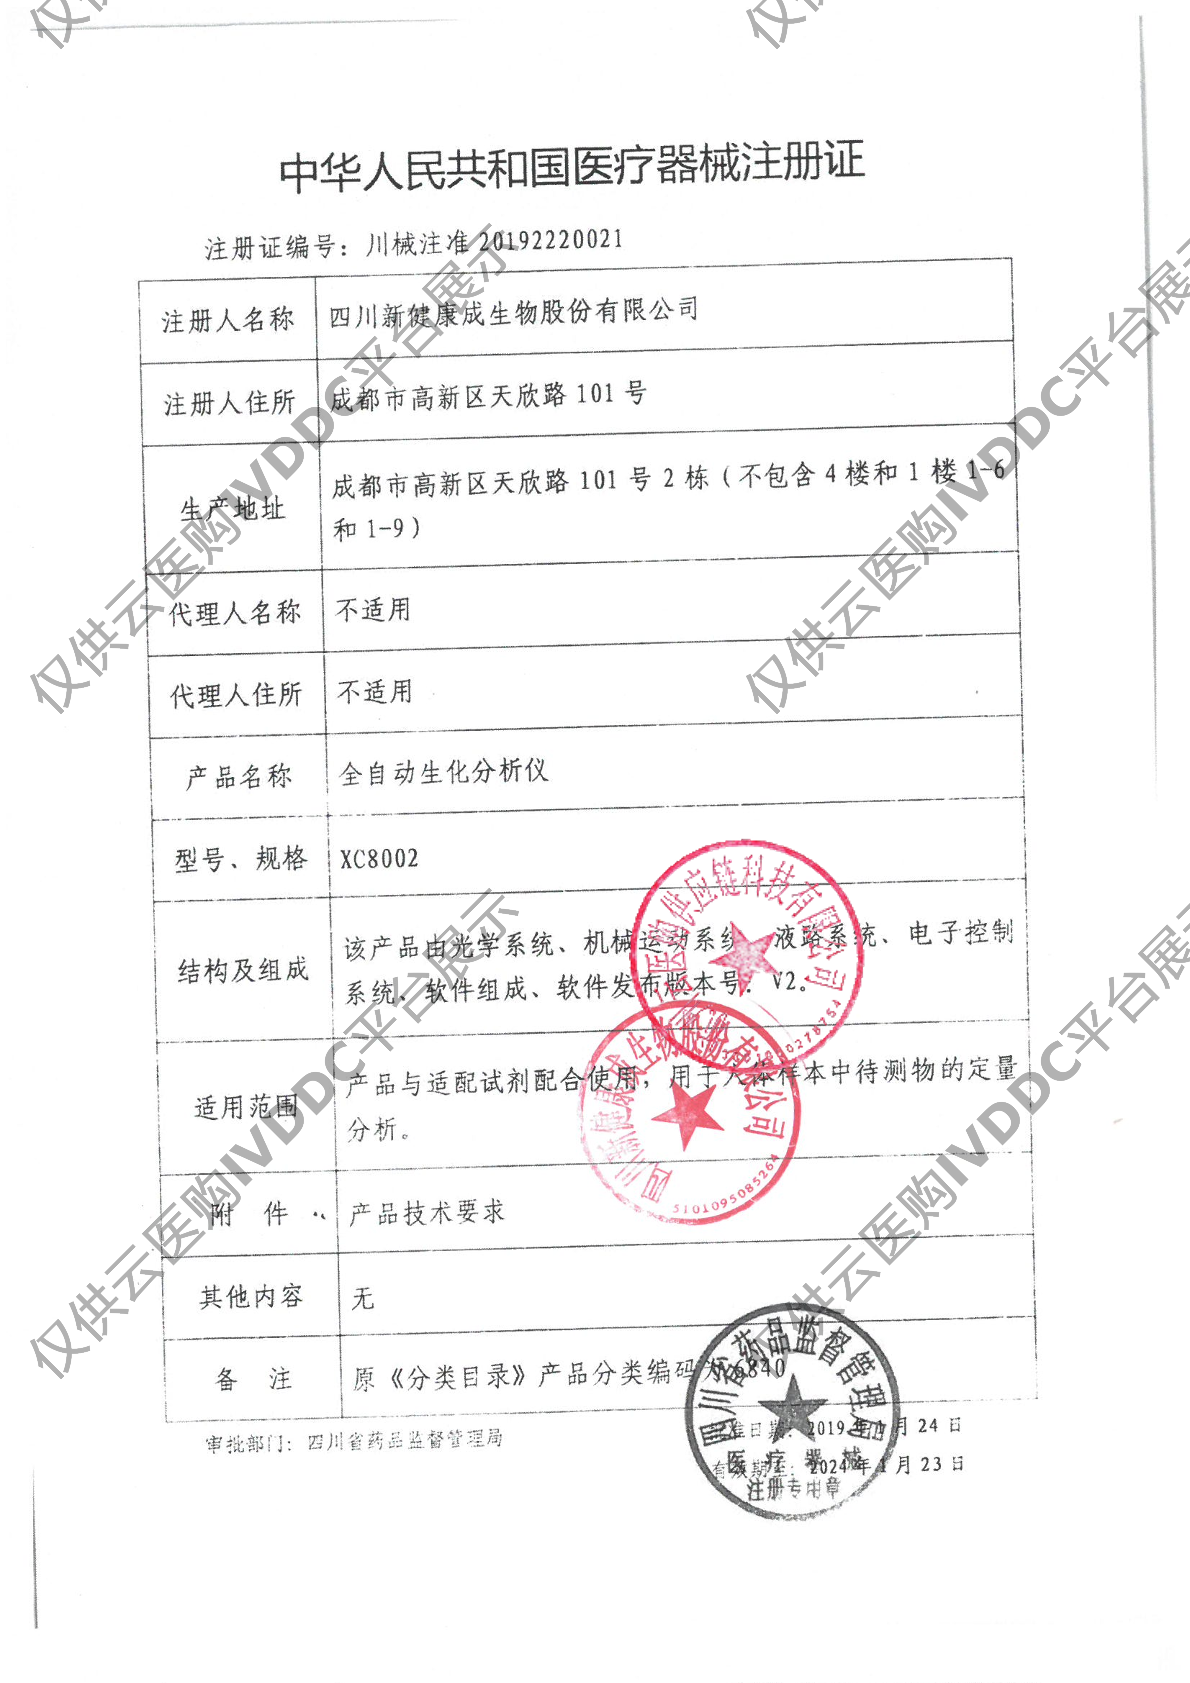 【新健康成】全自动生化分析仪XC8002注册证